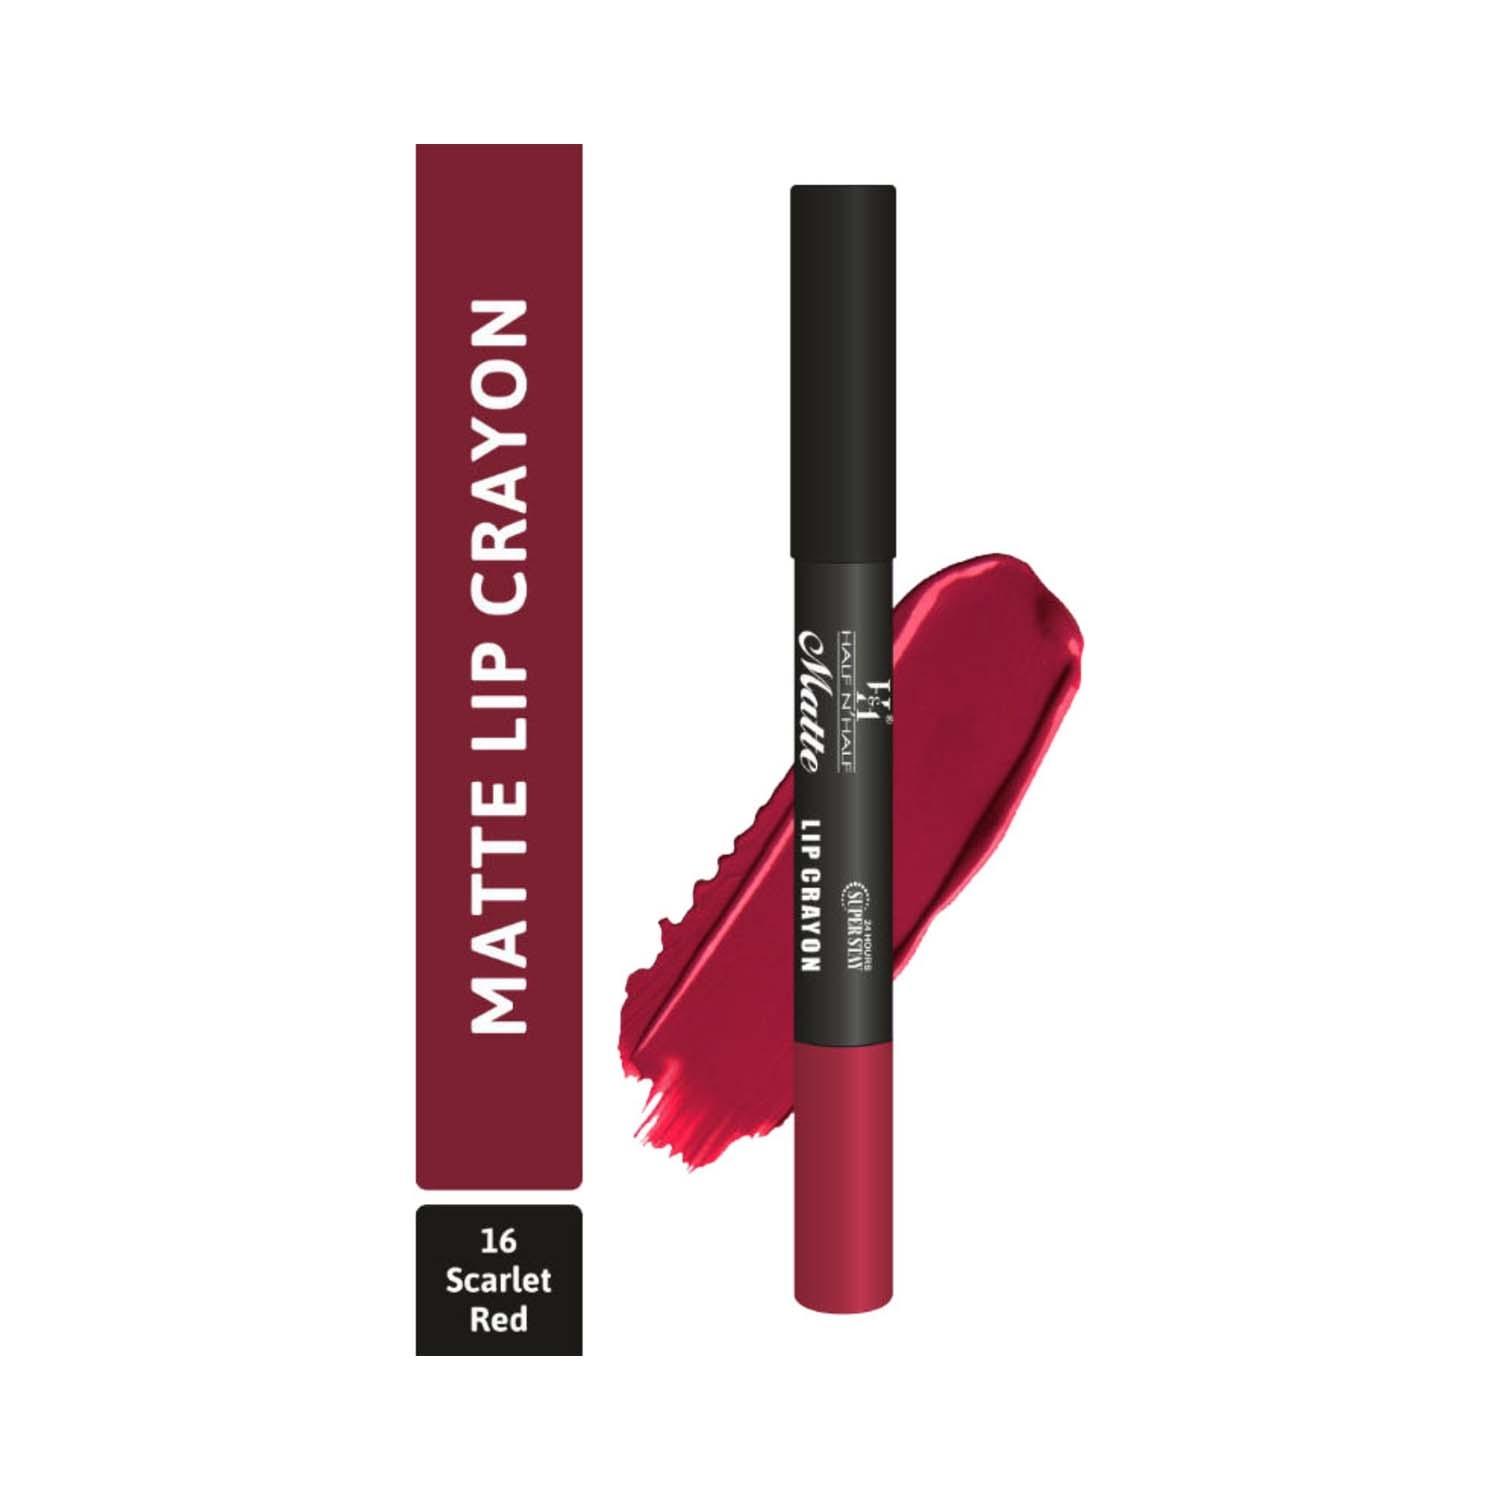 half n half matte velvet soft & long lasting 24h superstay lip crayon - 16 scarlet red (3.5g)